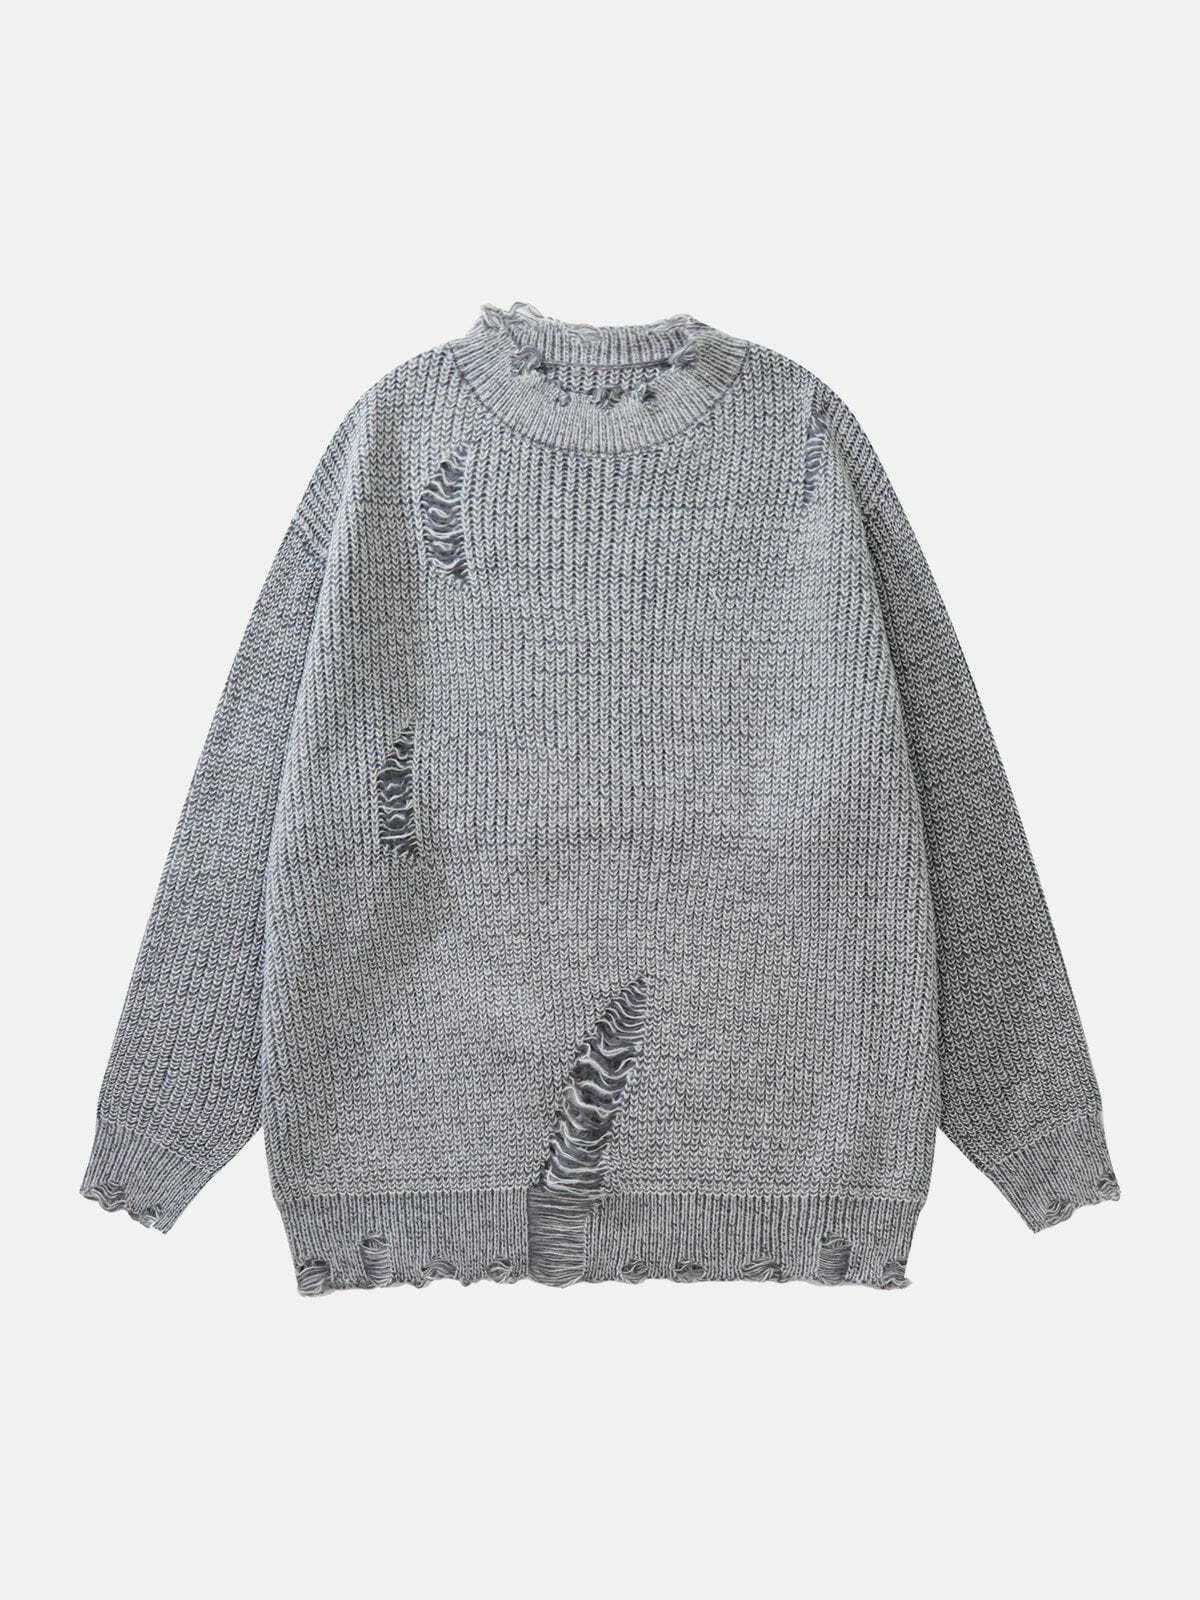 retro ripped knit sweater y2k fashion essential 4366